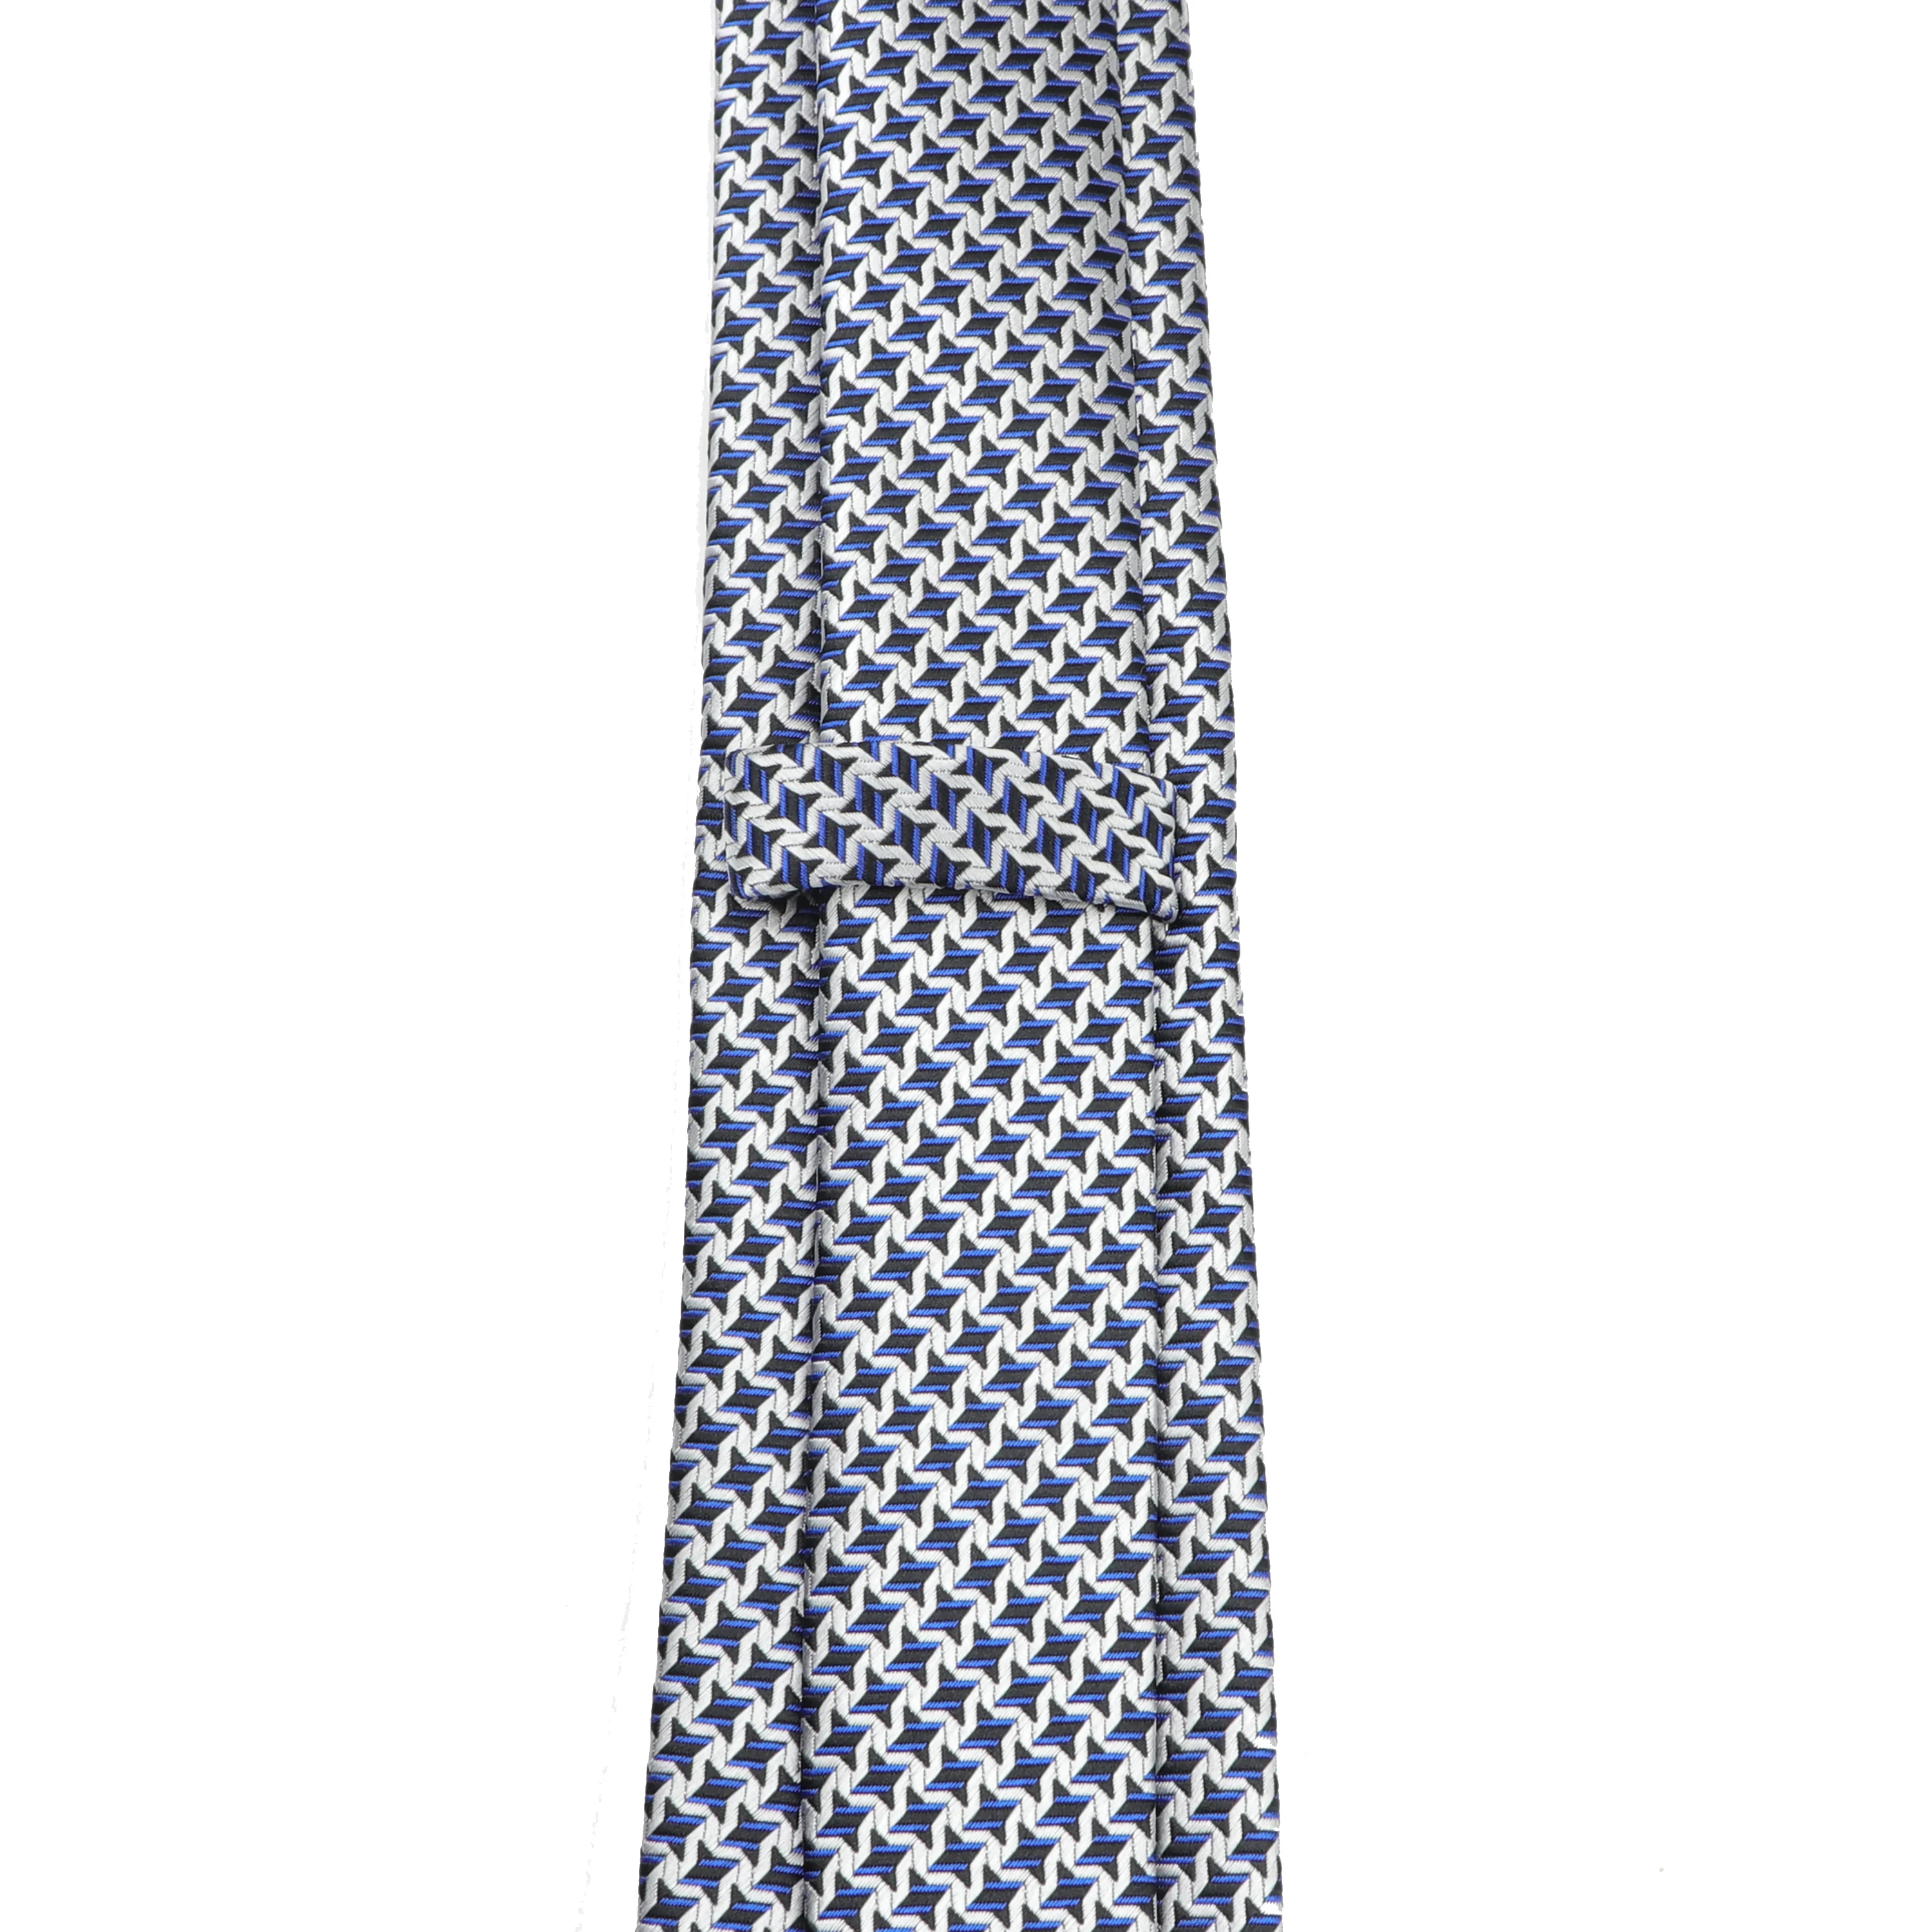 Официальный модный галстук, хит, 7 см., в горошек, со звездами, для жениха, свадебные, деловые галстуки для мужчин, дизайнерские, вечерние, полиэстер, гравата, стрелка, шелковый галстук